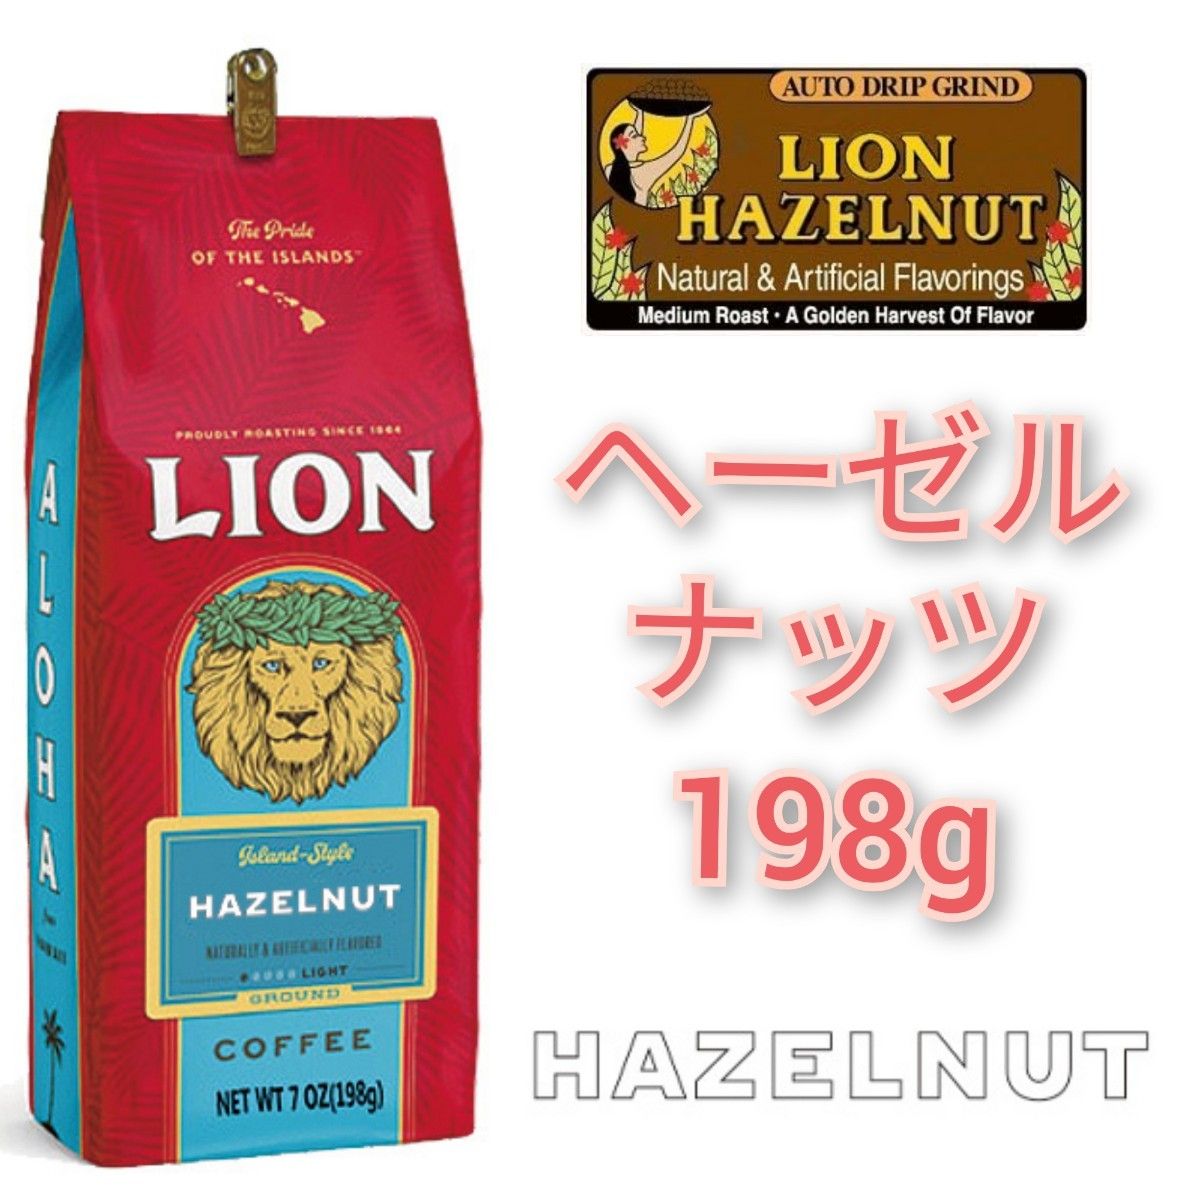 ライオンコーヒー チョコレートマカダミア ヘーゼルナッツ 198g×2 Lion coffee 2種 ハワイ フレーバーコーヒー